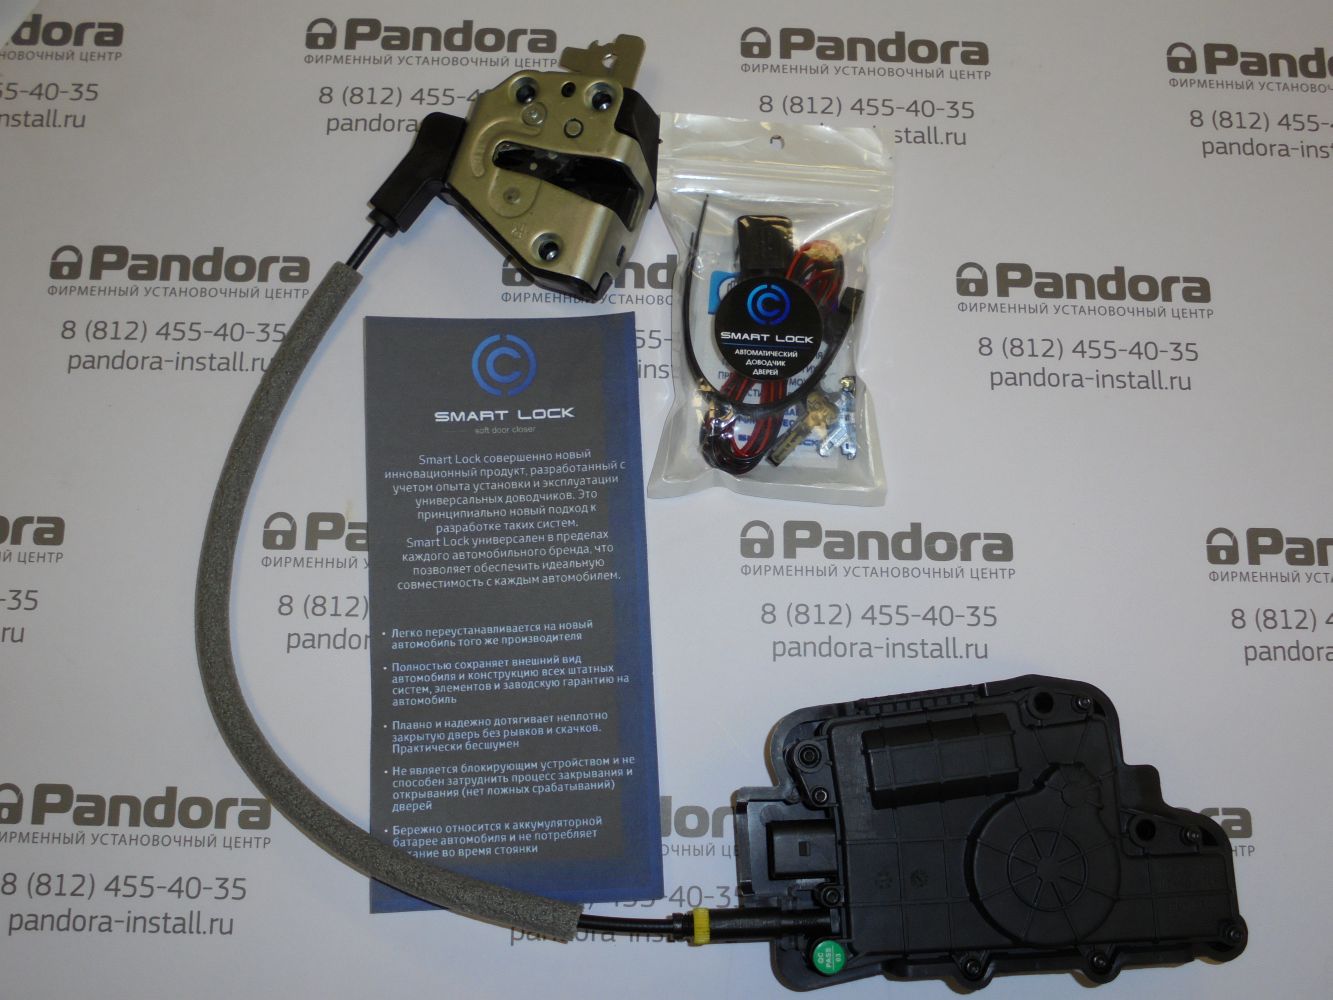 Dovodchiki Dverej Smart Lock V Spb Pandora Install